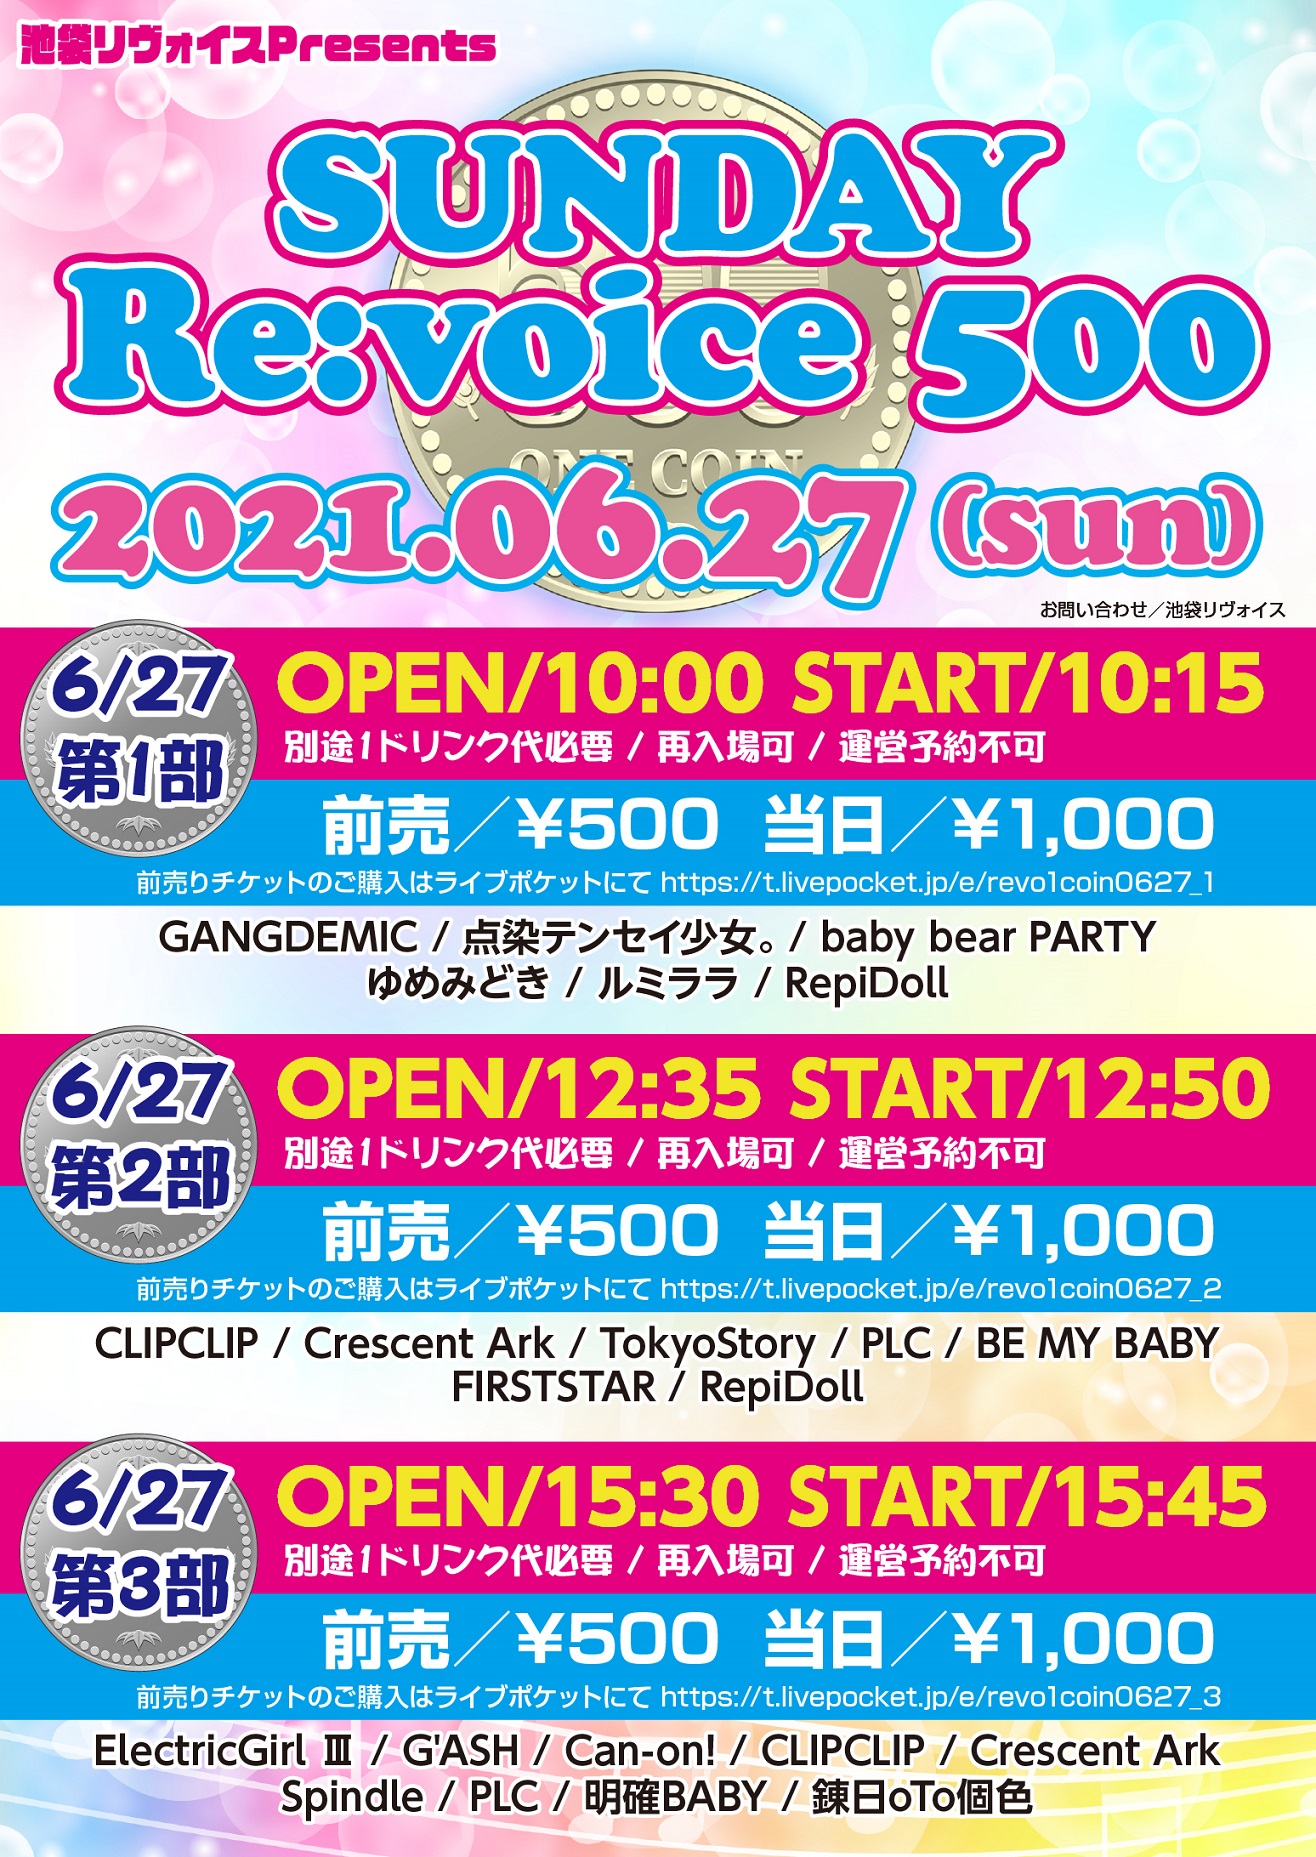 【第三部】SUNDAY Re:voice 500